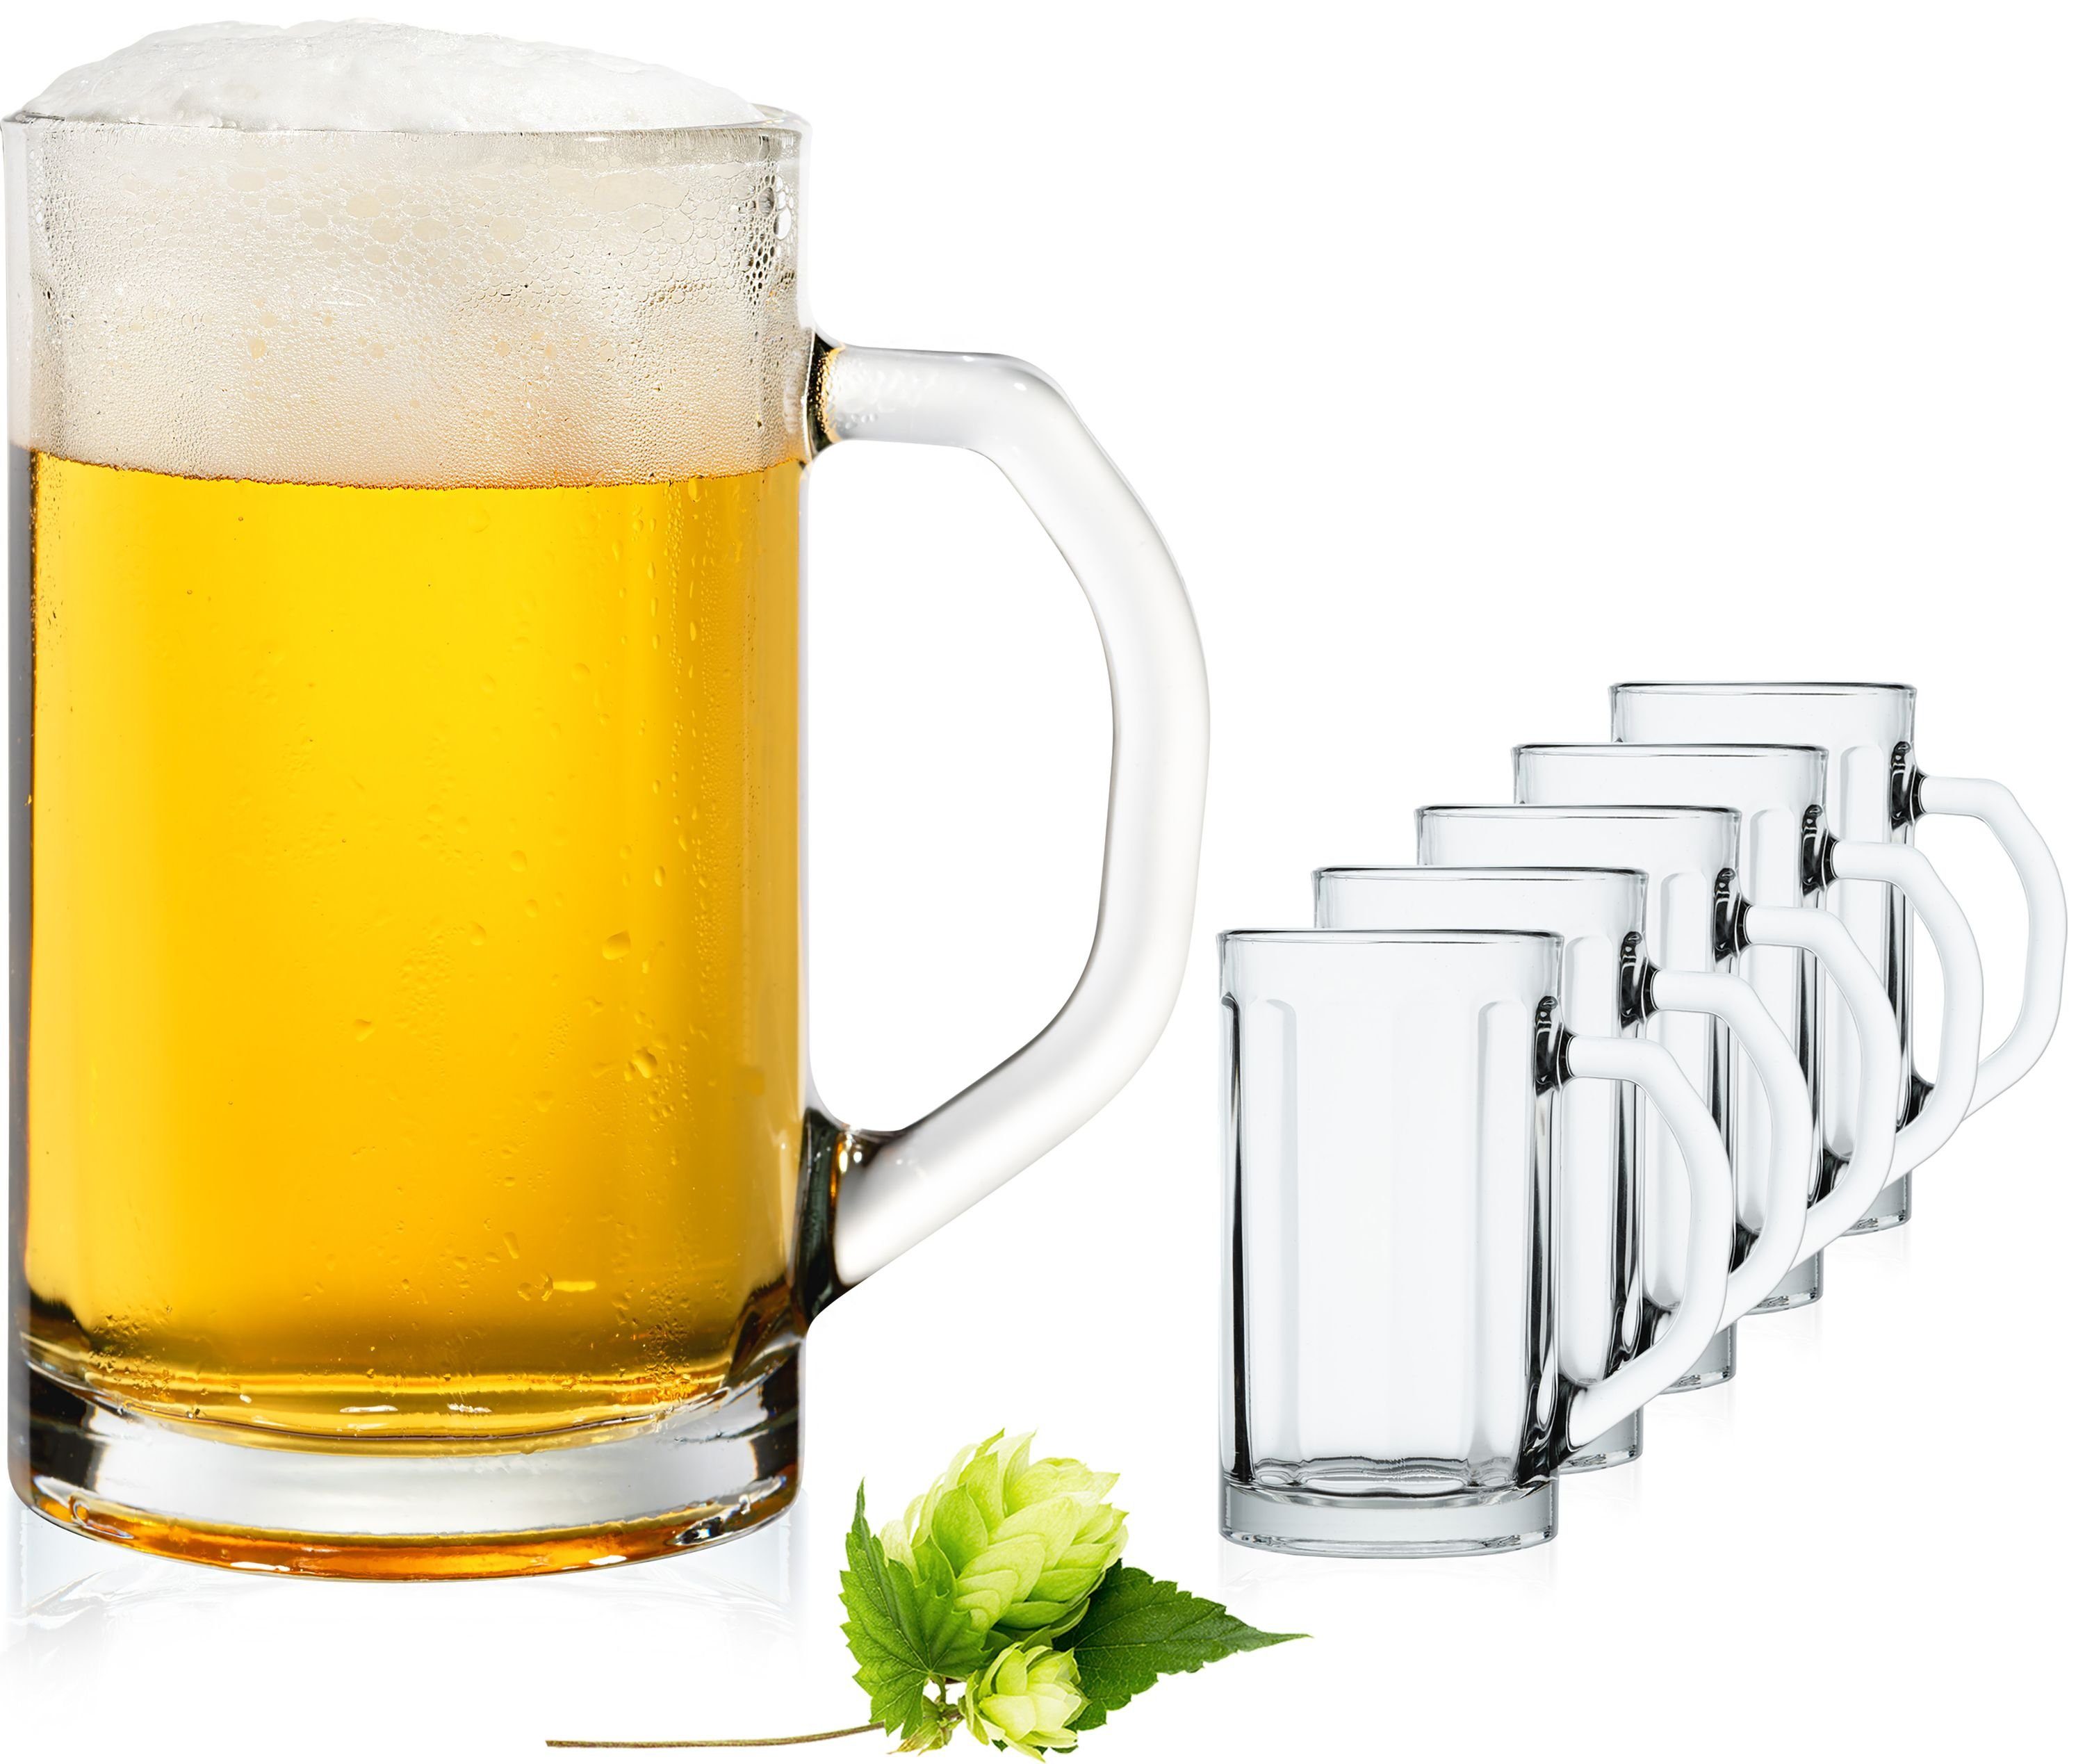 Bierseidel Bierkrüge Biergläser mit Henkel 0,5 Liter Set 6 Teilig Maßkrug 